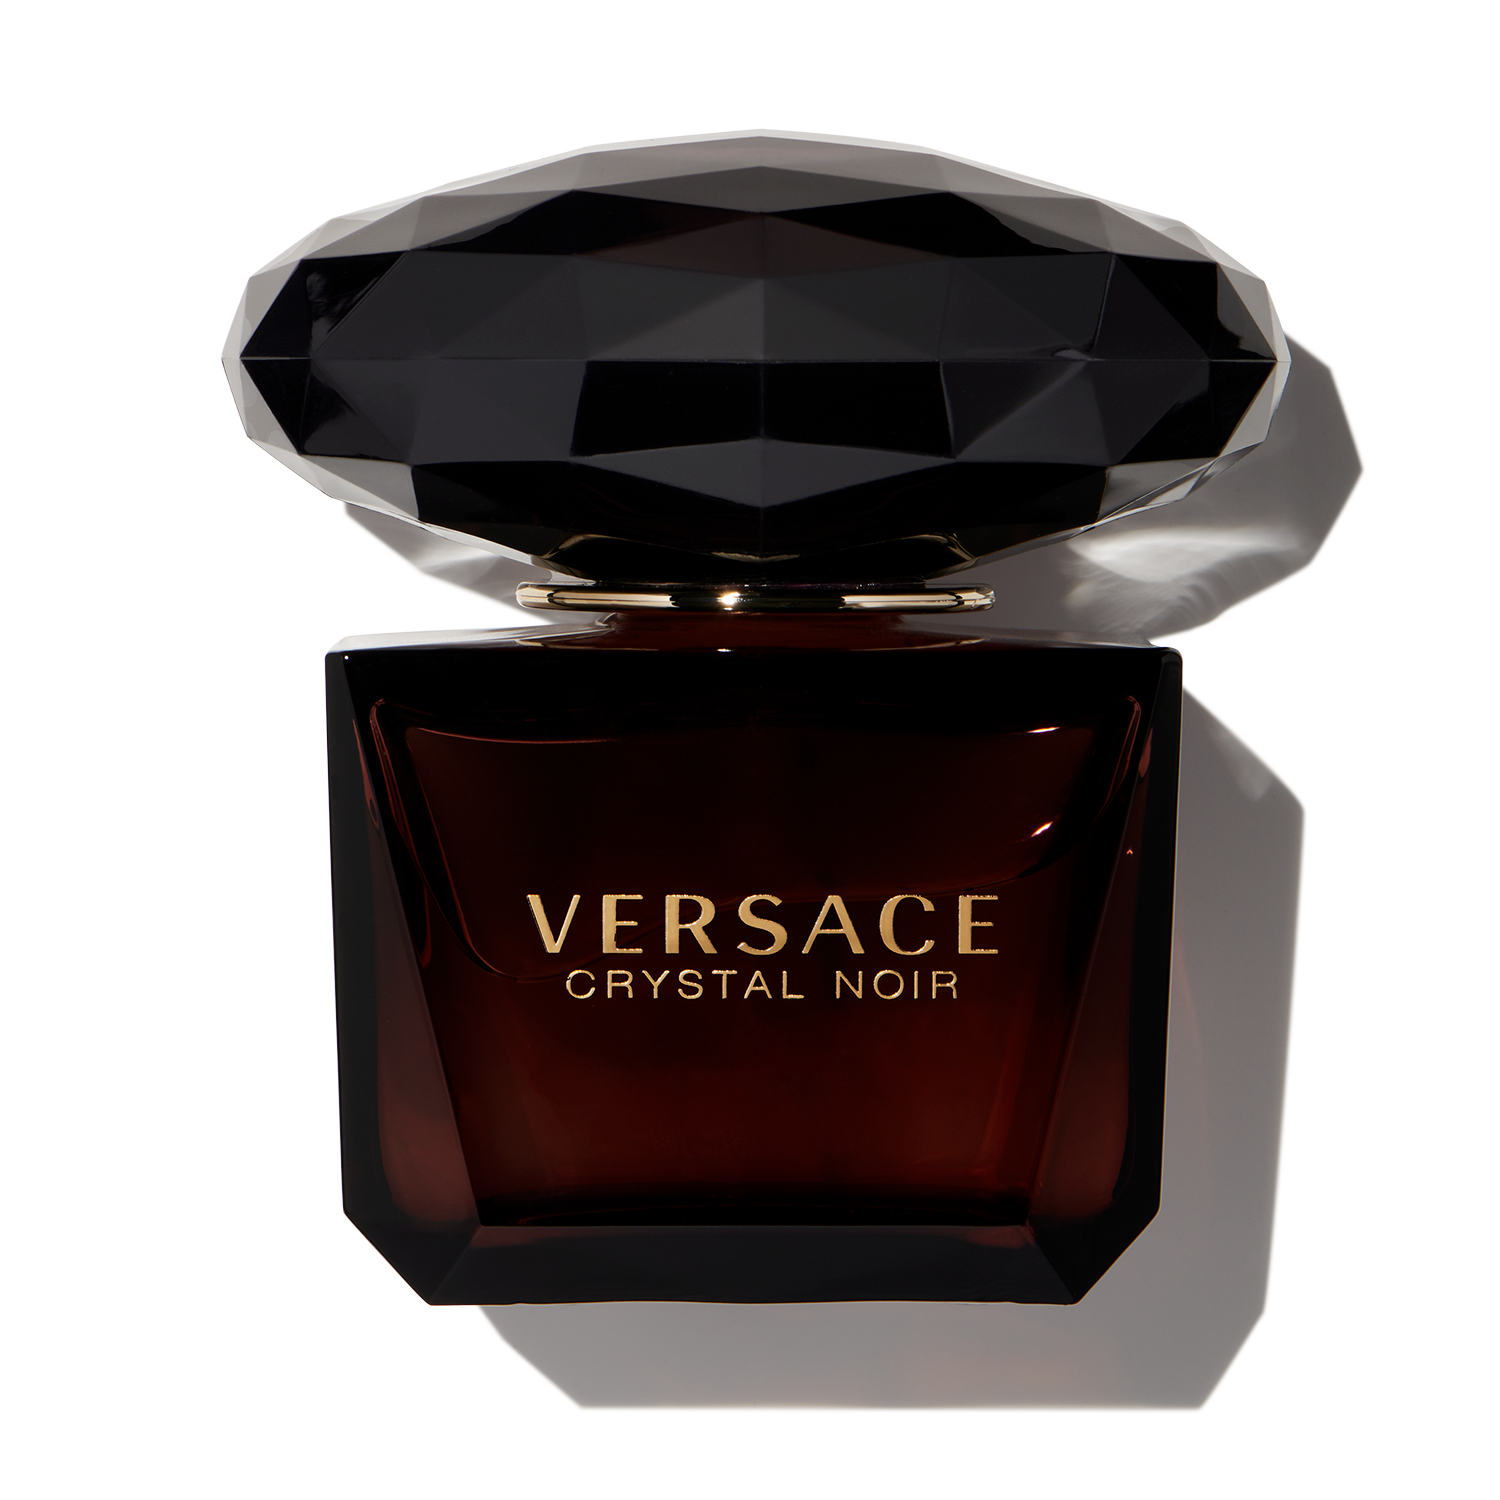 Voorafgaan fout Prestatie Versace Crystal Noir | Buy Versace Crystal Noir Perfume